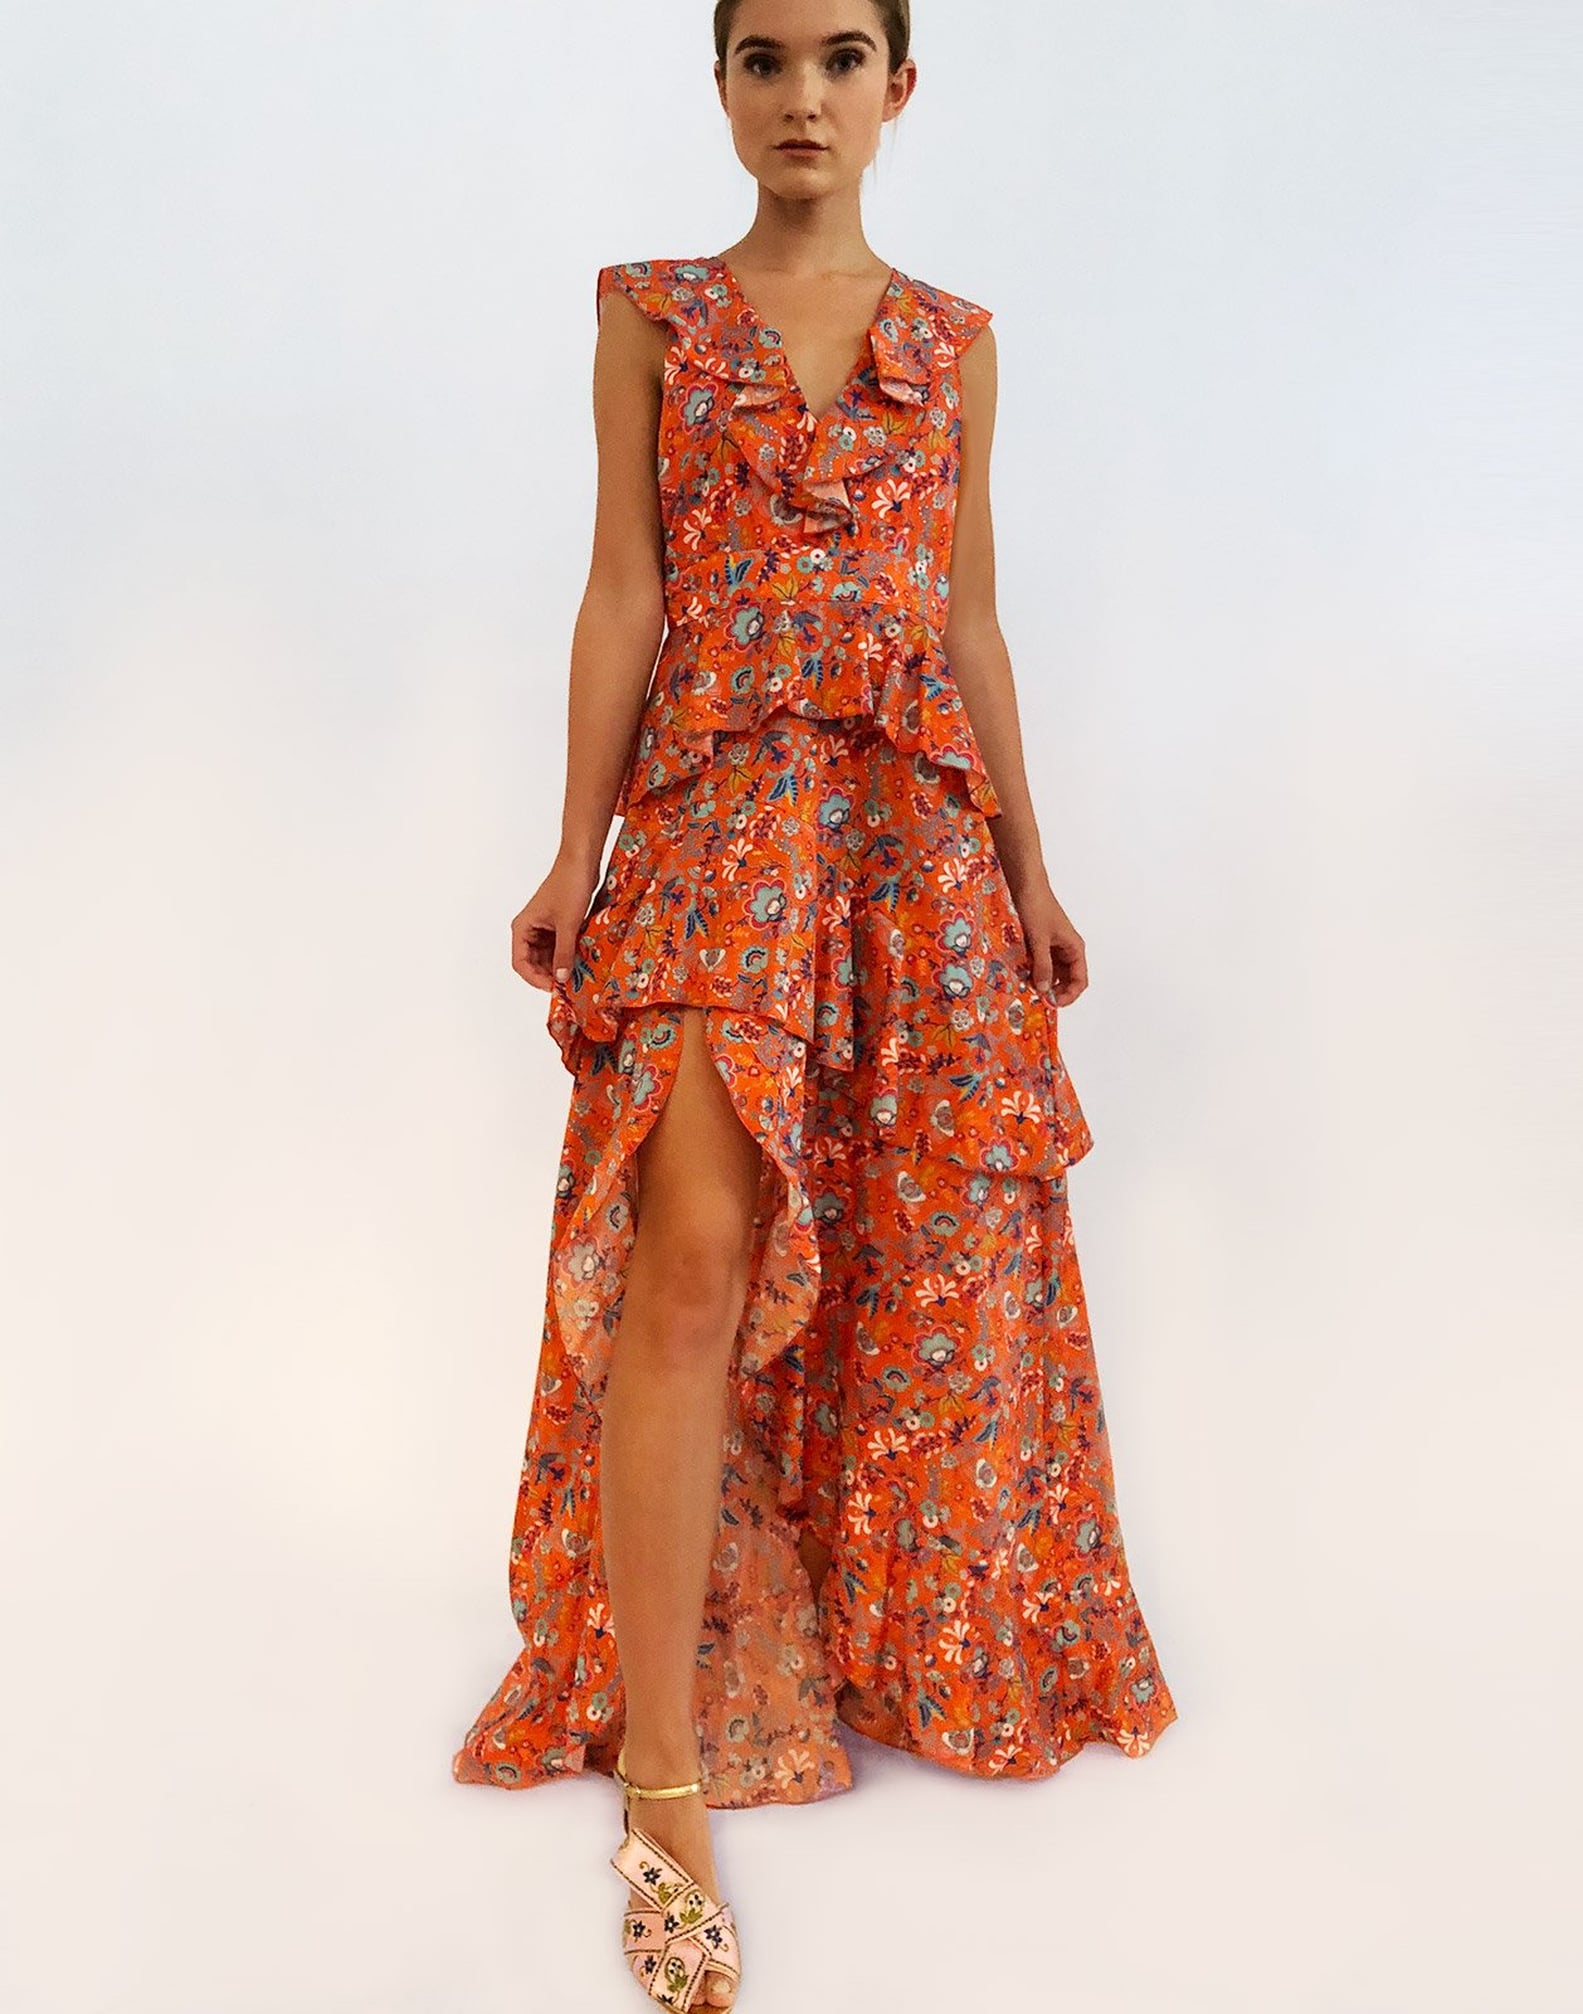 Cynthia Rowley Inclusivity in Fashion 2019 | POPSUGAR Fashion